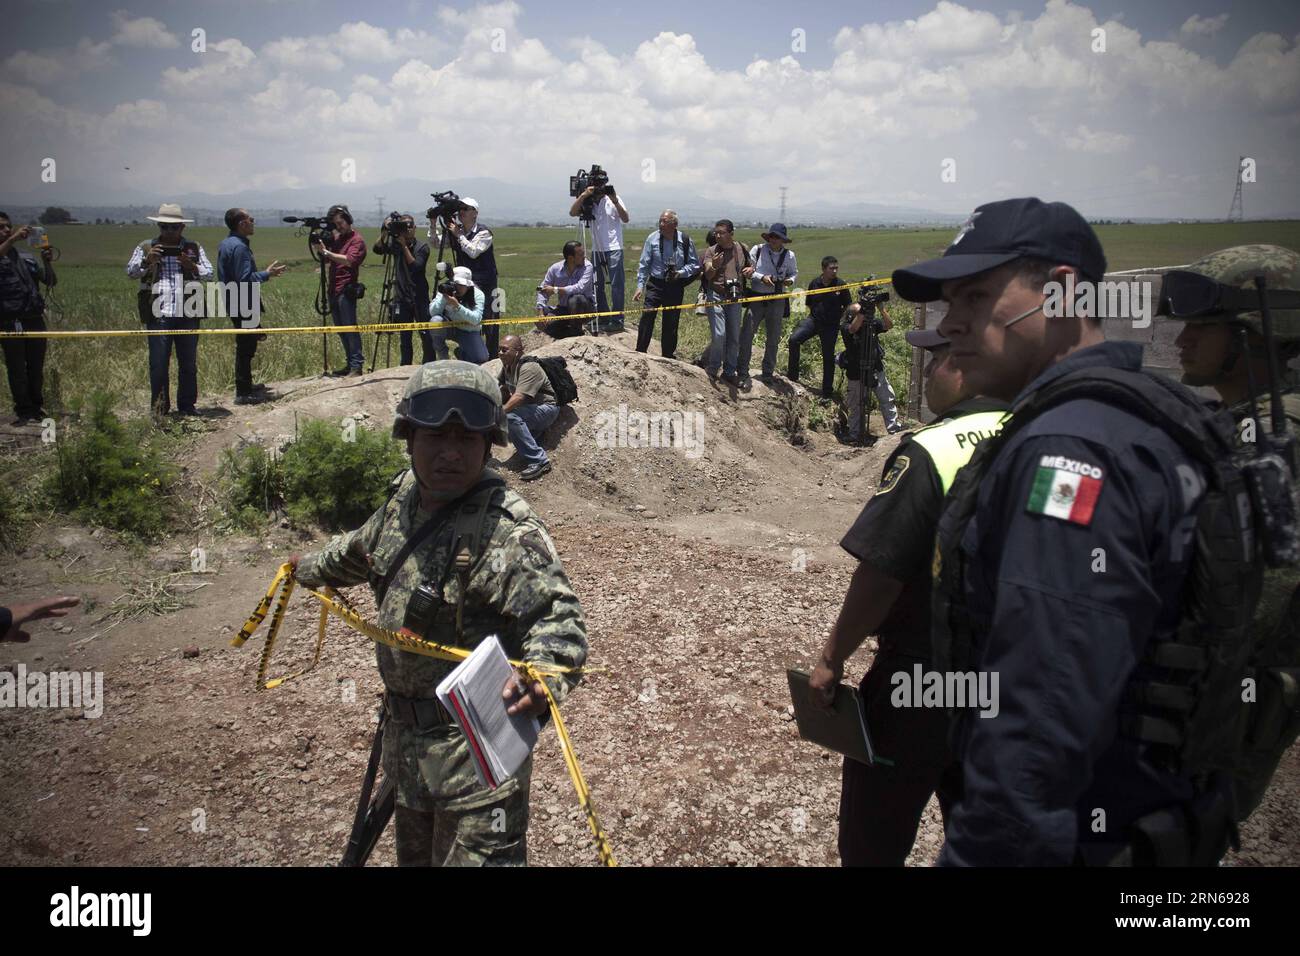 ALMOLOYA DE JUAREZ, 15 juillet 2015-- les forces de sécurité montent la garde dans les environs de la maison présumée où a été construit le tunnel, par lequel s est échappé de prison le seigneur de la drogue du Mexique Joaquin El Chapo Guzman, à Almoloya de Juarez, dans la banlieue de Mexico, Mexique, le 15 juillet 2015. Guzman, chef du cartel de la drogue de Sinaloa, a disparu samedi soir de la prison de haute sécurité Altiplano à l'extérieur de Mexico, selon la Commission de sécurité nationale. MEXIQUE-ALMOLOYA DE JUAREZ-GUZMAN AlejandroxAyala PUBLICATIONxNOTxINxCHN ALMOLOYA de Juarez juillet 15 2015 Forces de sécurité Banque D'Images